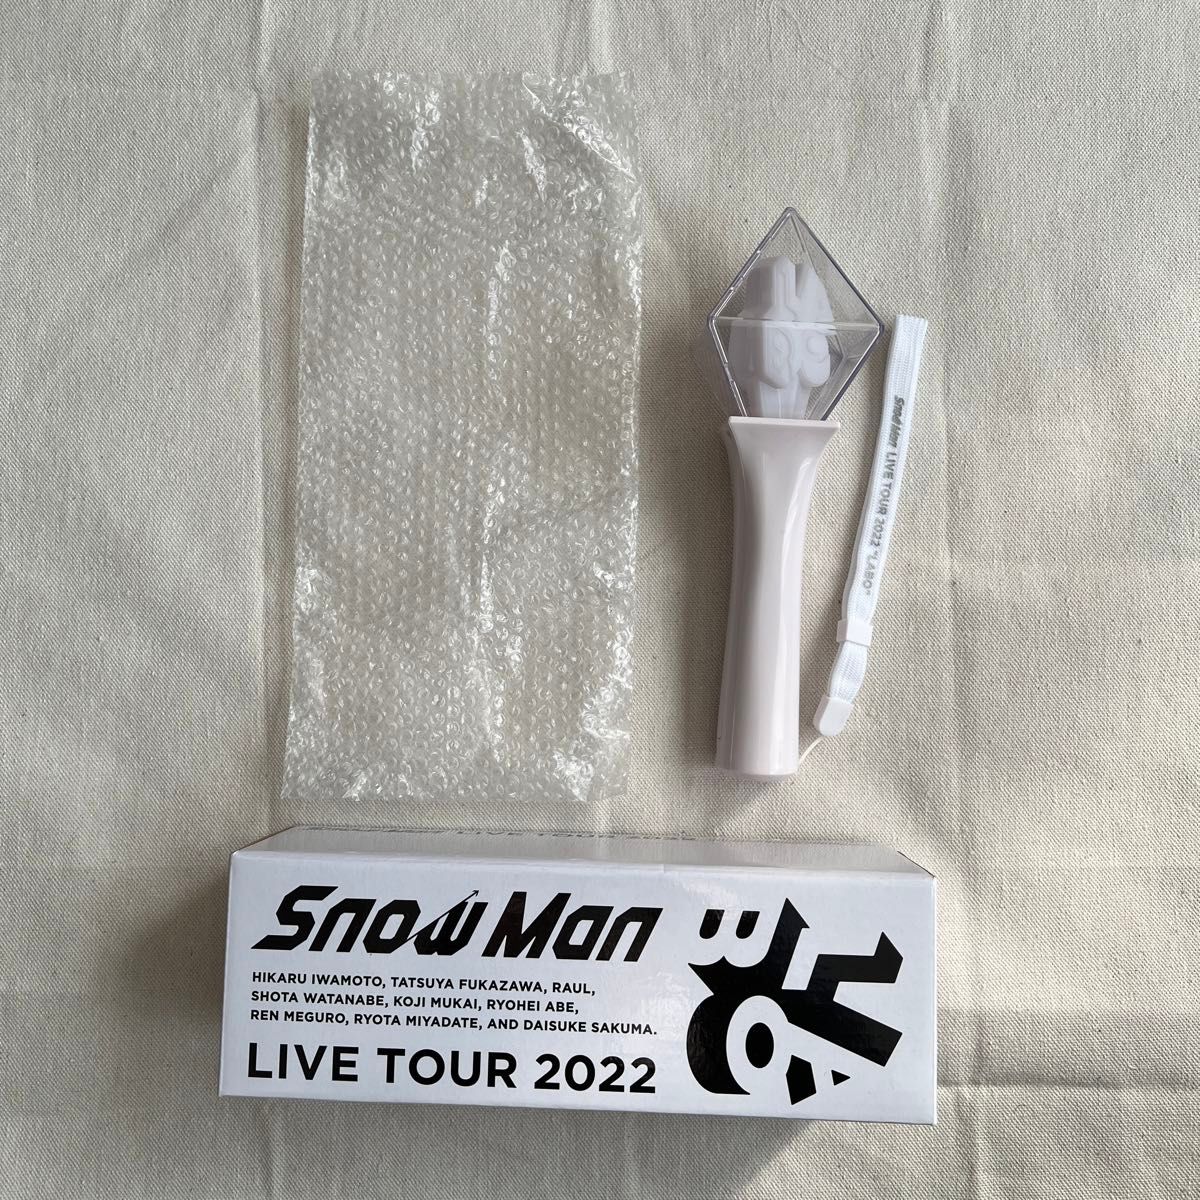 オリジナル ペンライト Snow Man LIVE TOUR 2022 Labo. ライブ グッズ